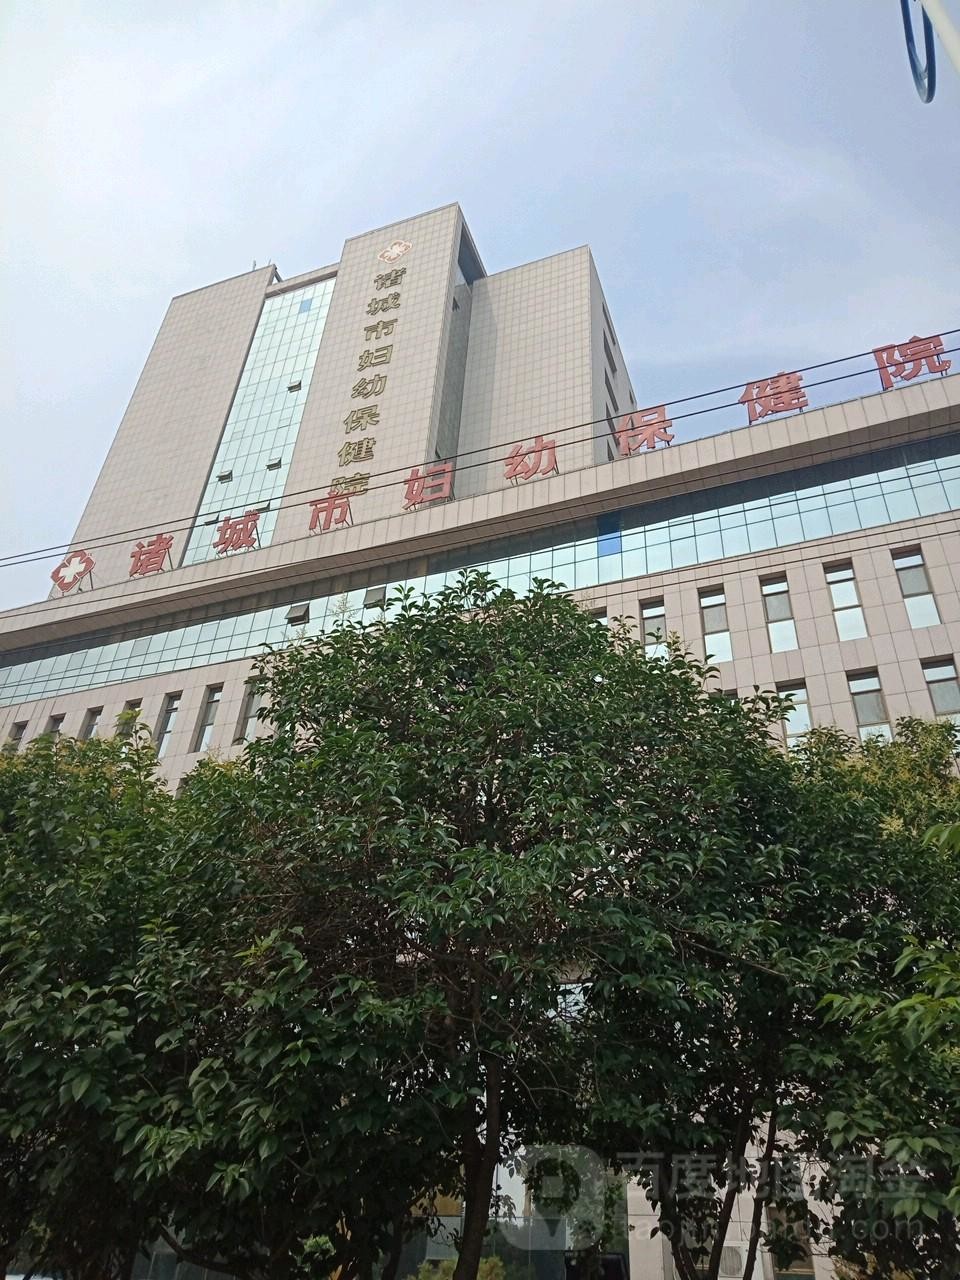 آخرین مورد شرکت بیمارستان بهداشت مادر و کودک Zhucheng City